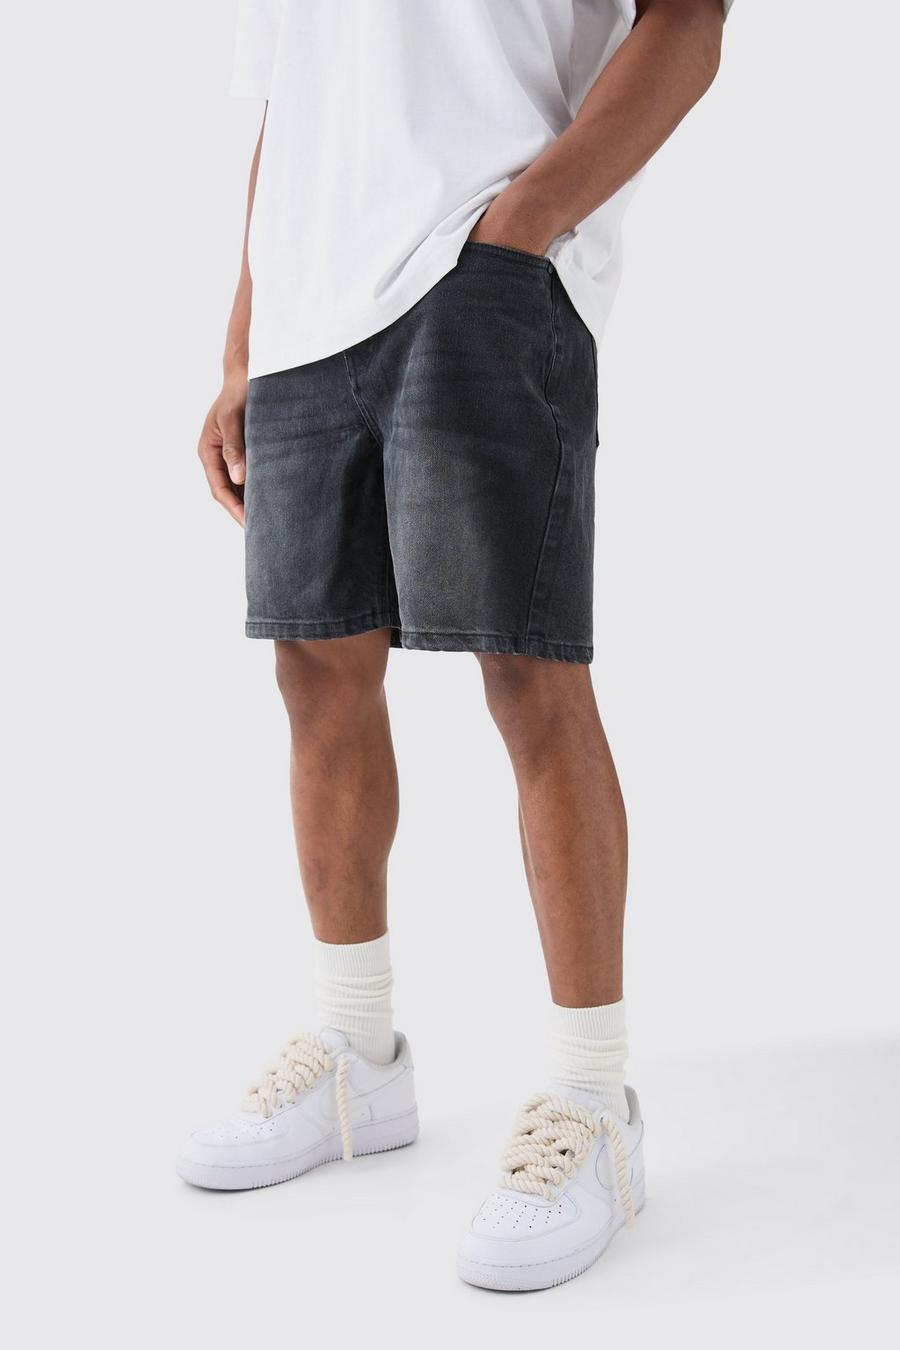 Pantalones cortos vaqueros holgados sin tratar en color carbón, Charcoal image number 1